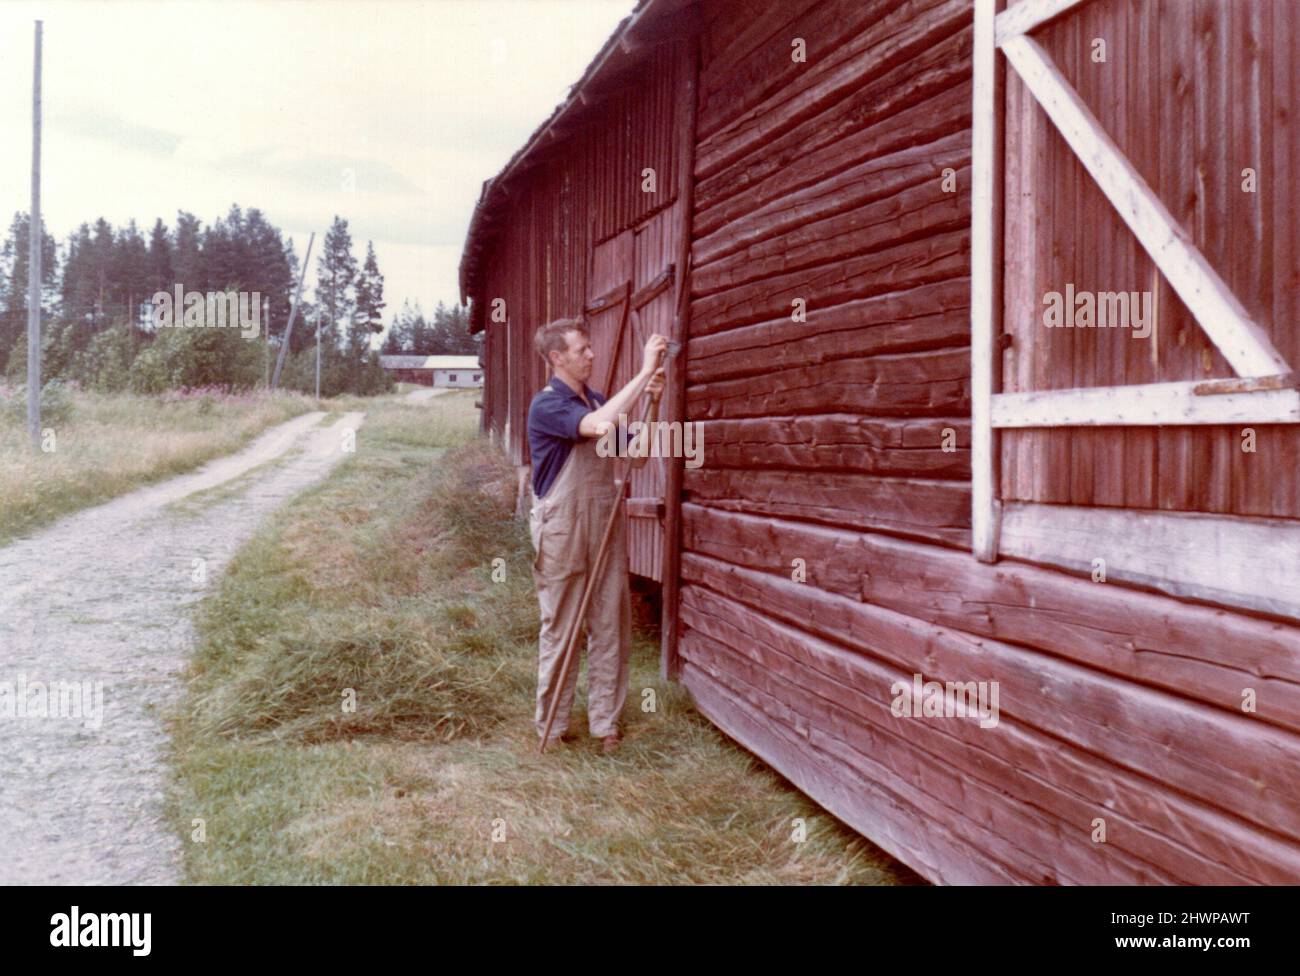 Fotografía original de los años 70 del hombre en la calle fuera del tradicional edificio de madera roja falu en el entorno rural, Suecia Foto de stock